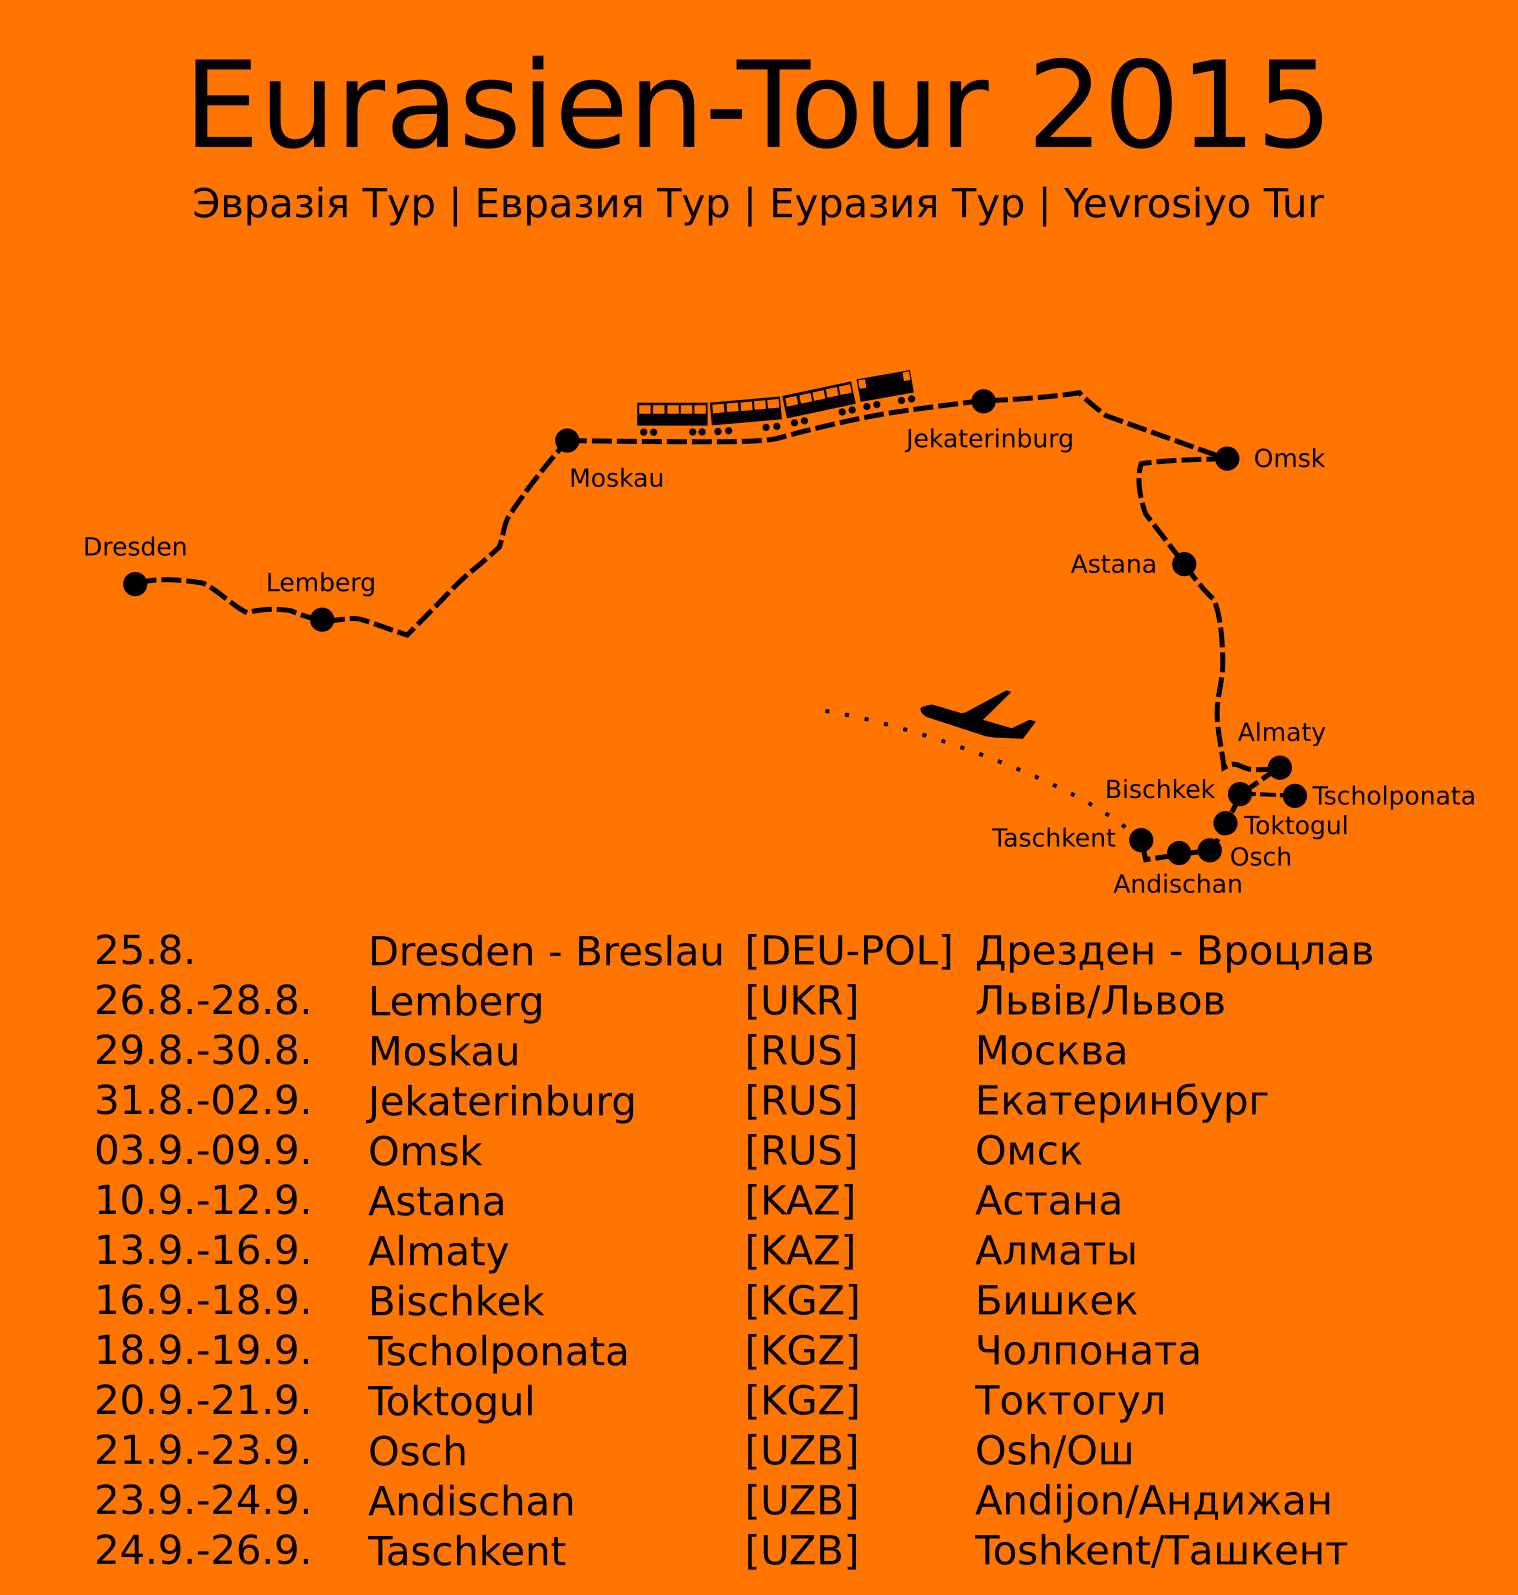 Die Reiseroute der Eurasien-Tour 2015